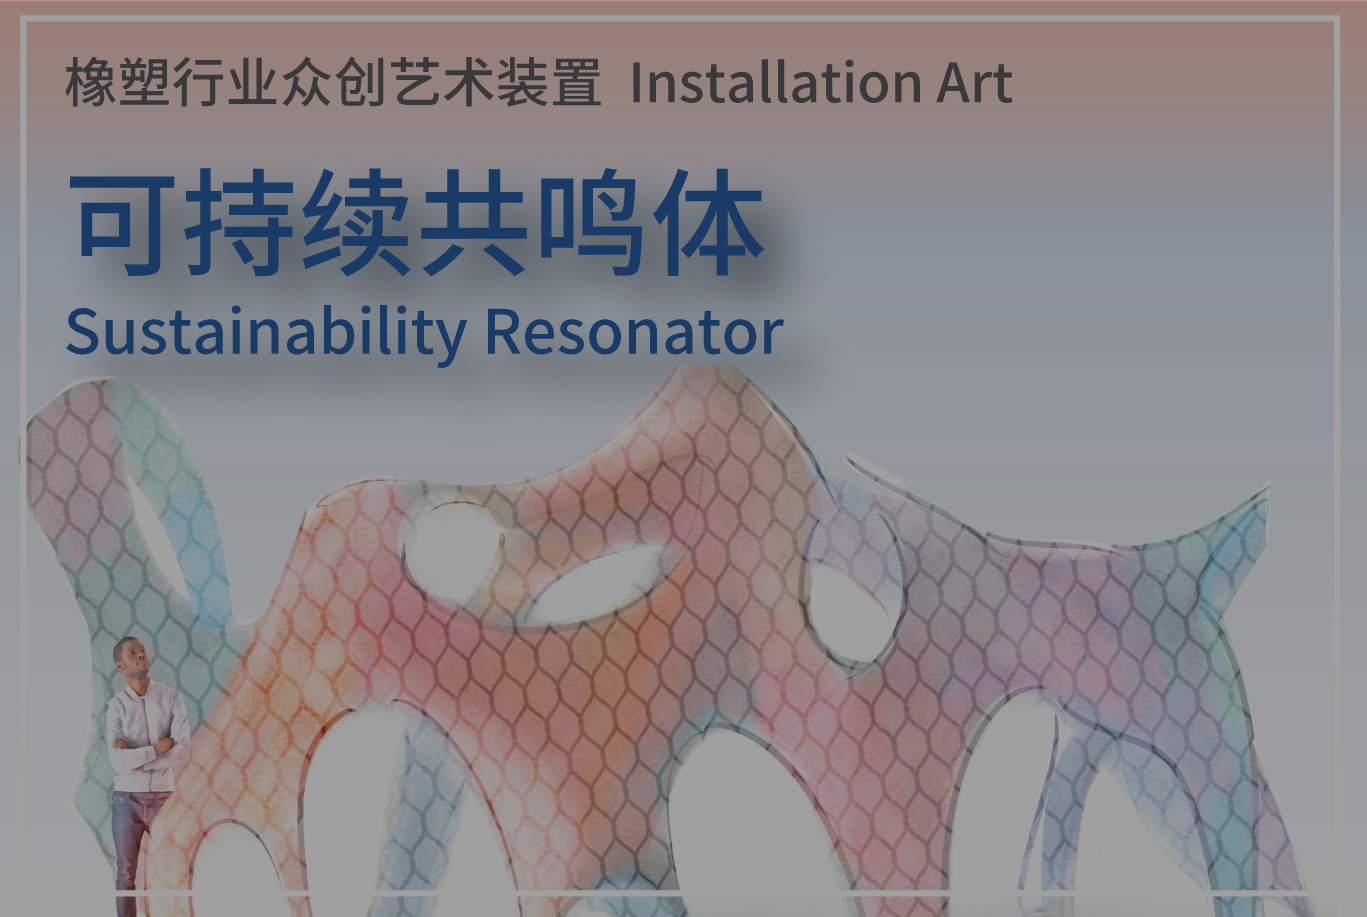 Installation Art Sustainability Resonator